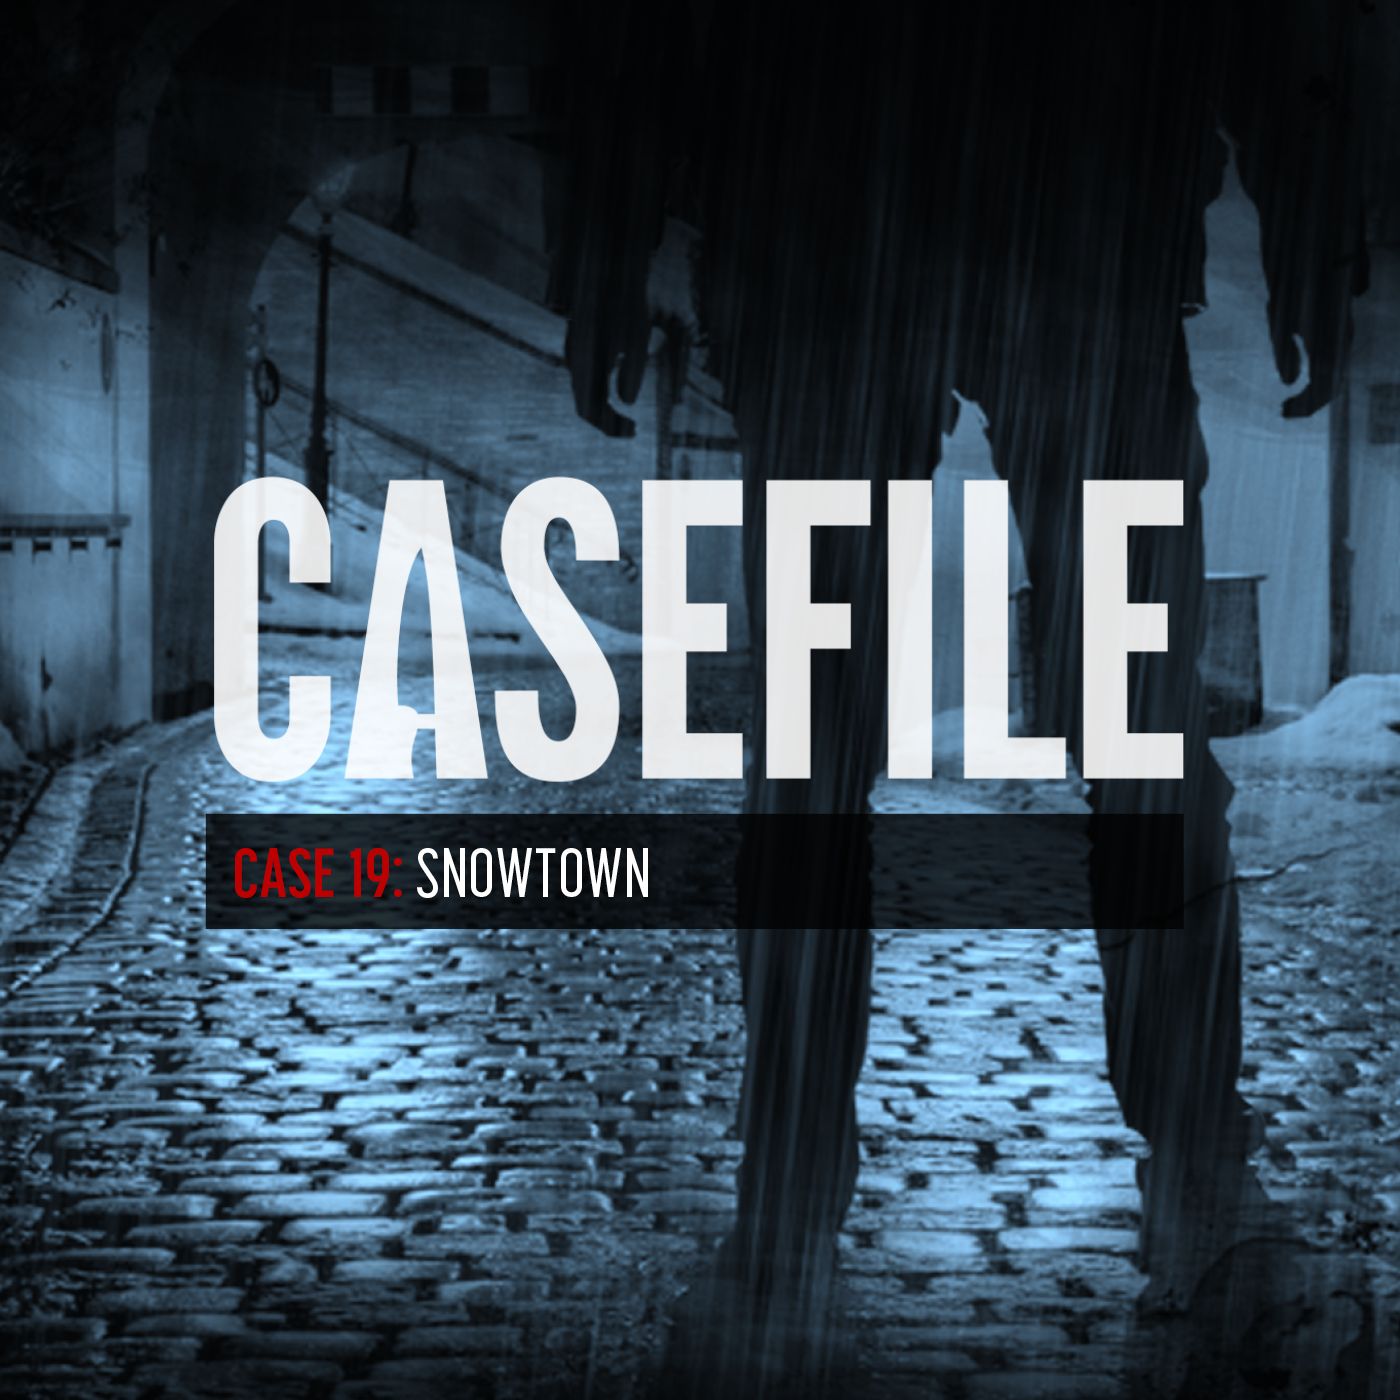 Case 19: Snowtown